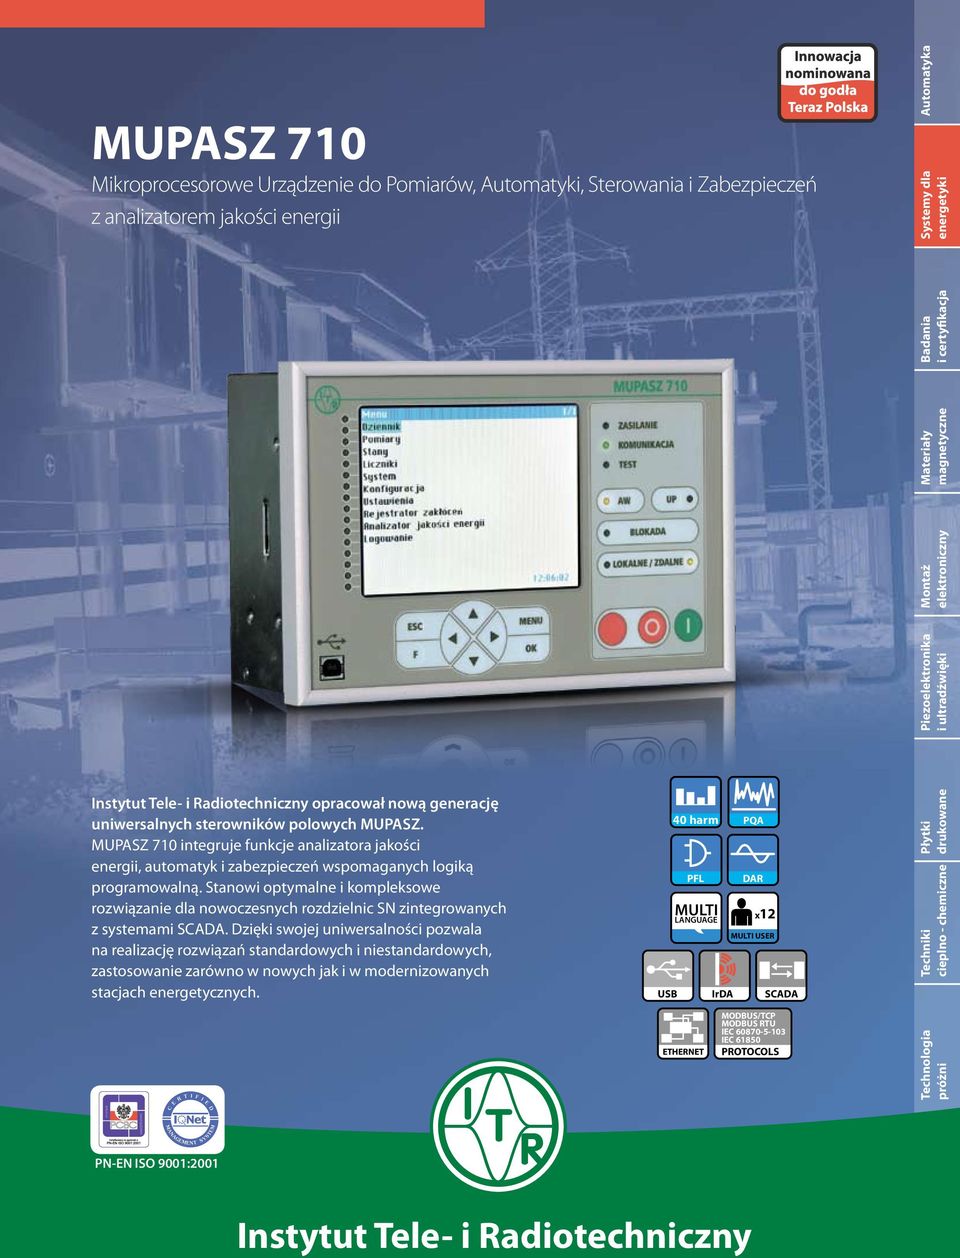 MUPASZ 710 integruje funkcje analizatora jakości energii, automatyk i zabezpieczeń wspomaganych logiką programowalną.